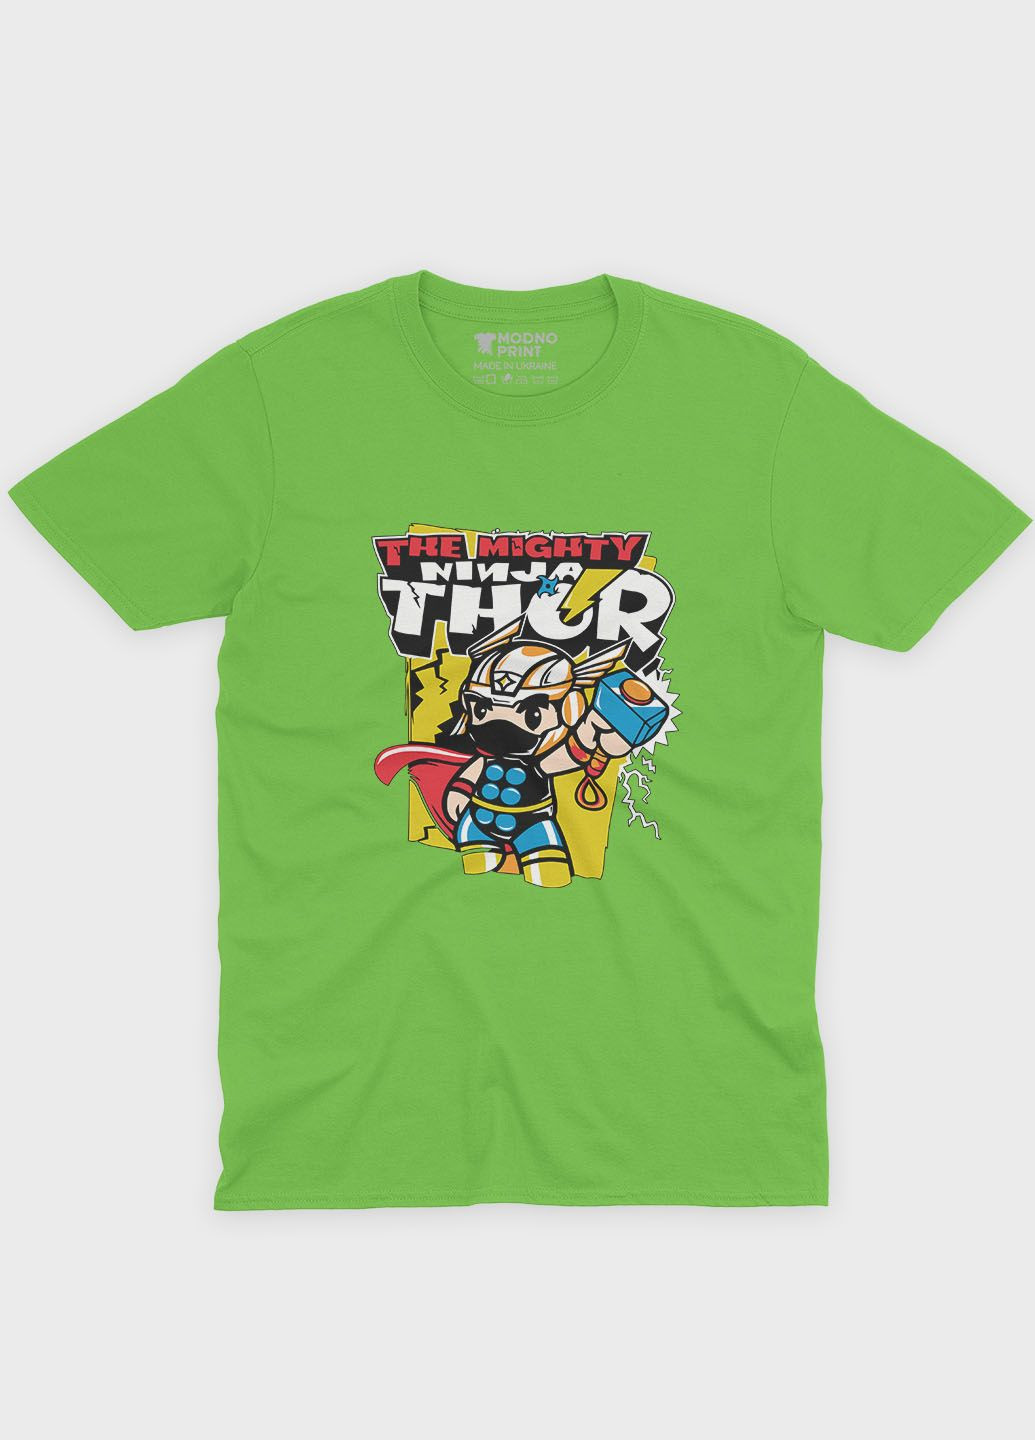 Салатовая демисезонная футболка для мальчика с принтом супергероя - тор (ts001-1-kiw-006-024-001-b) Modno